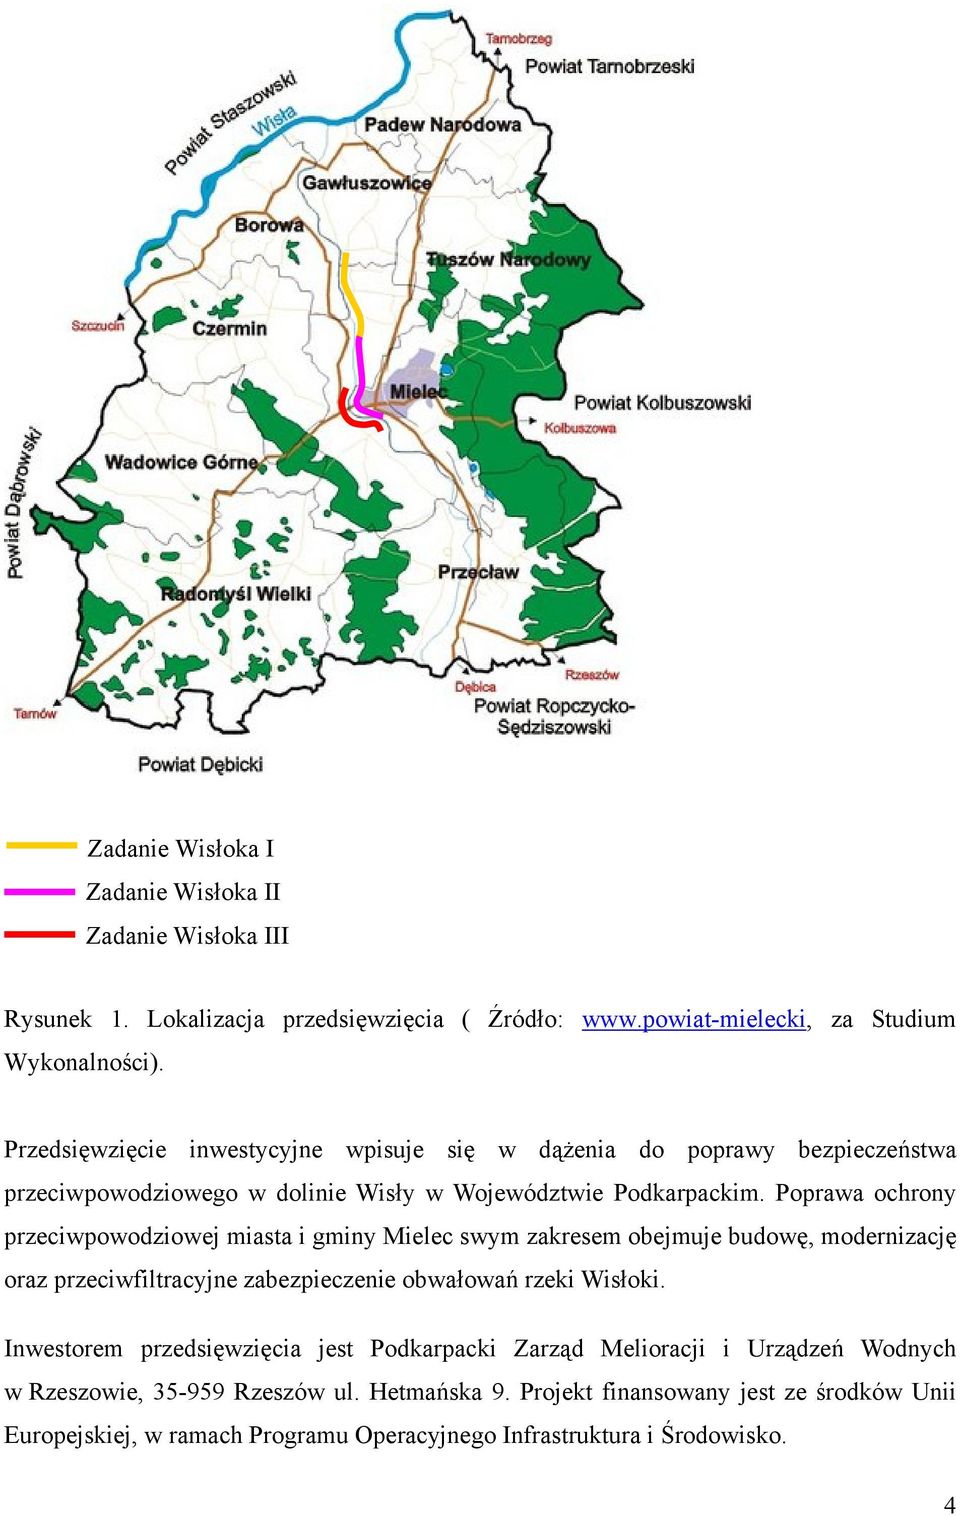 Poprawa ochrony przeciwpowodziowej miasta i gminy Mielec swym zakresem obejmuje budowę, modernizację oraz przeciwfiltracyjne zabezpieczenie obwałowań rzeki Wisłoki.